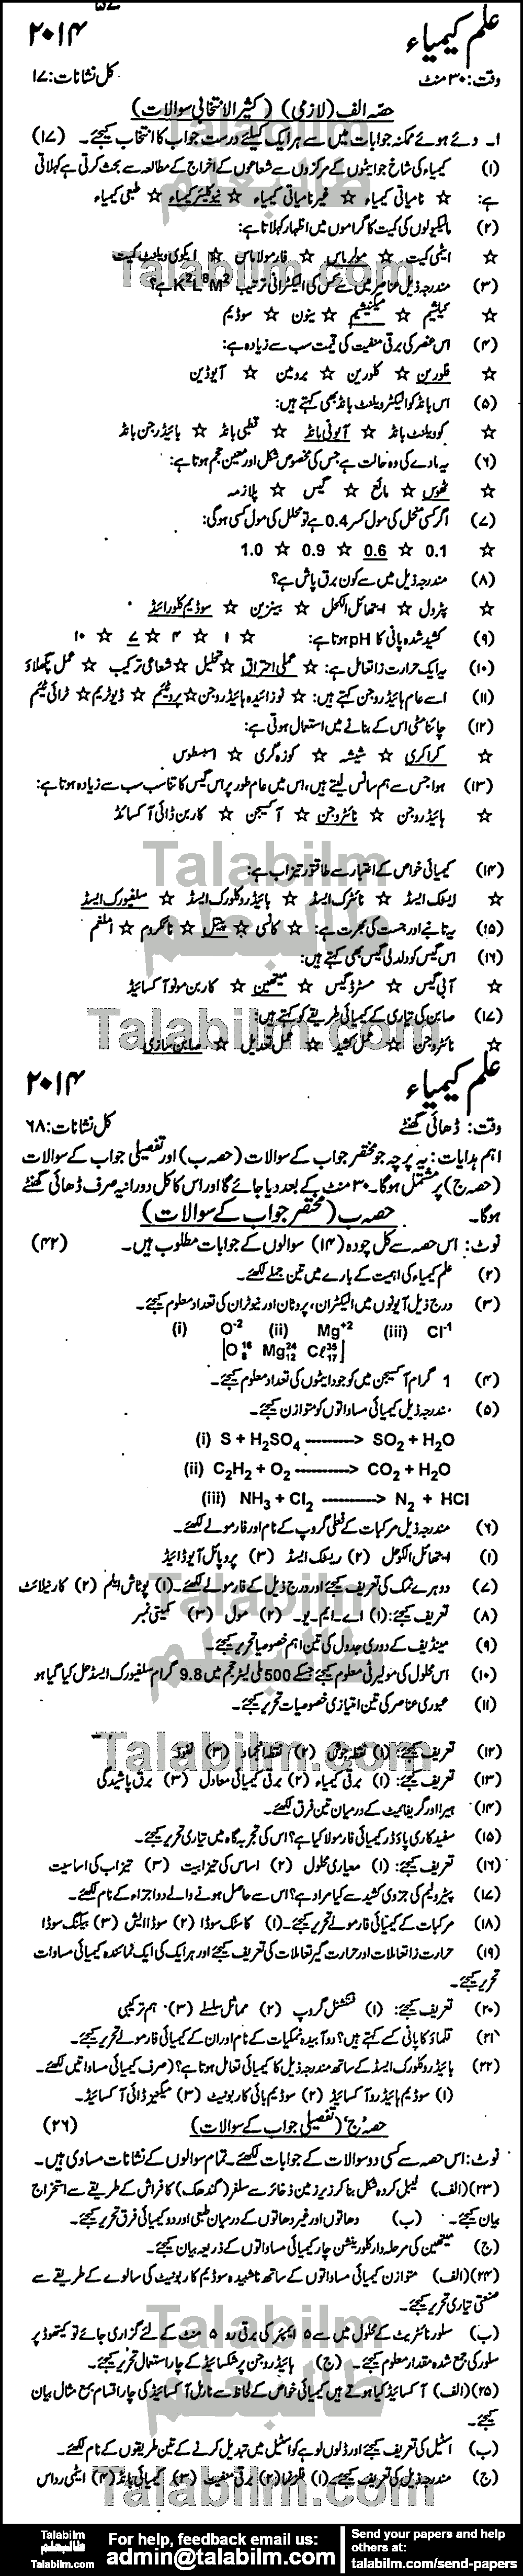 Chemistry 0 past paper for Urdu Medium 2014 Group-I